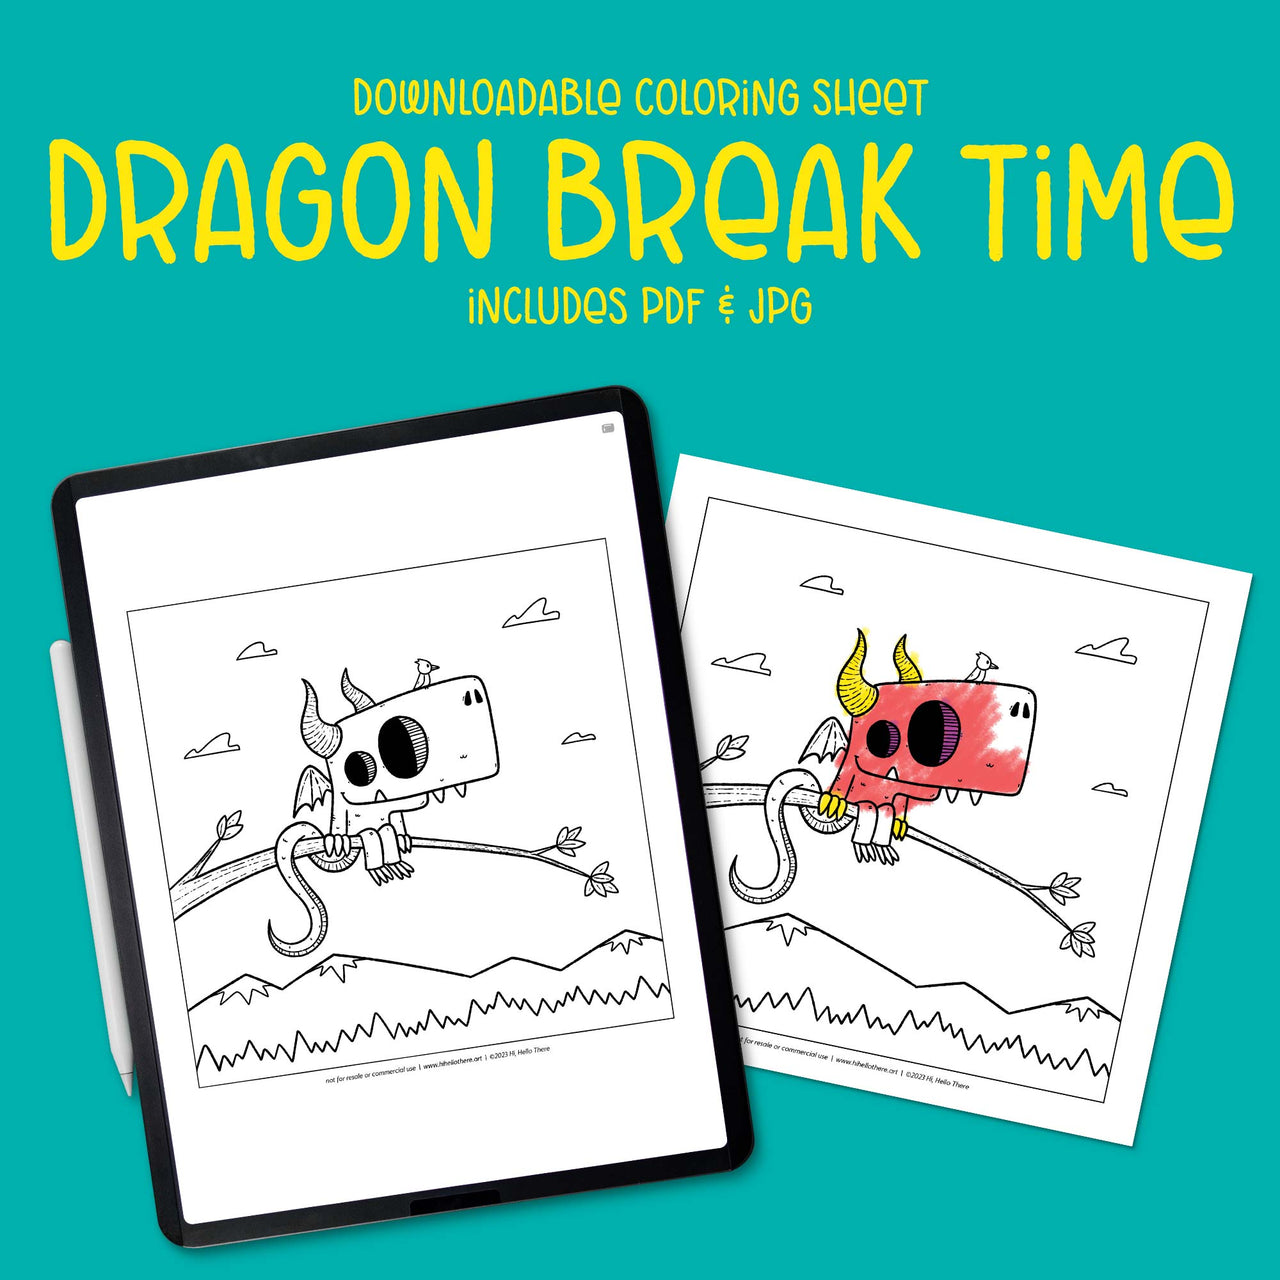 Dragon Break Time Downloadable Coloring Sheet